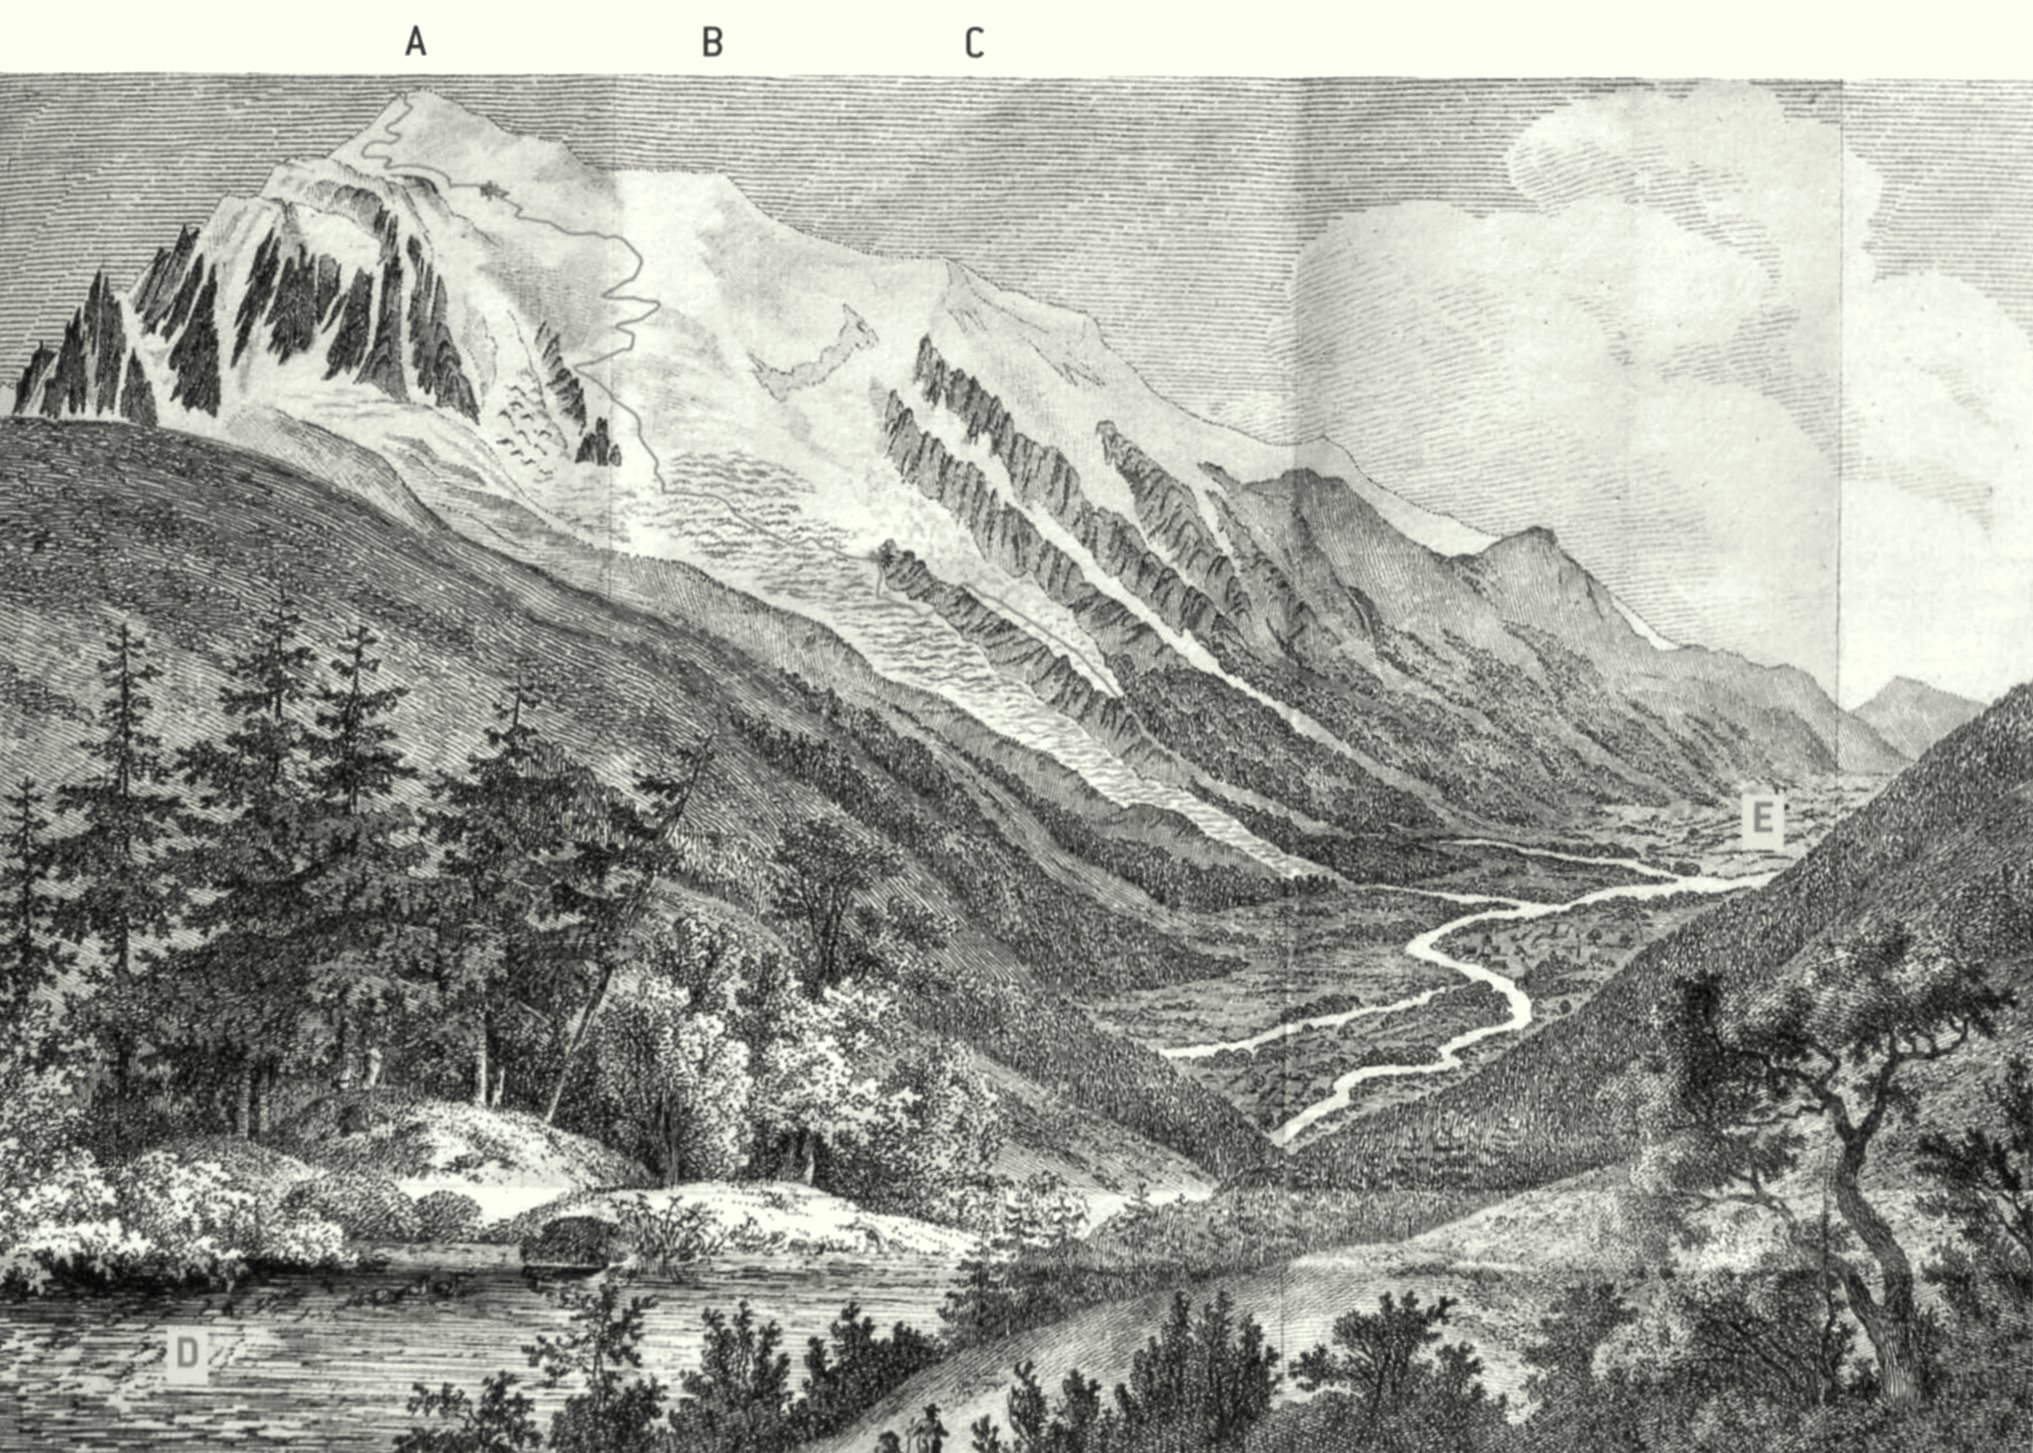 набросок маршрута второго восхождения на Монблан экспедиции де Соссюра, опубликованный в "Voyages dans les Alpes" в 1796 году